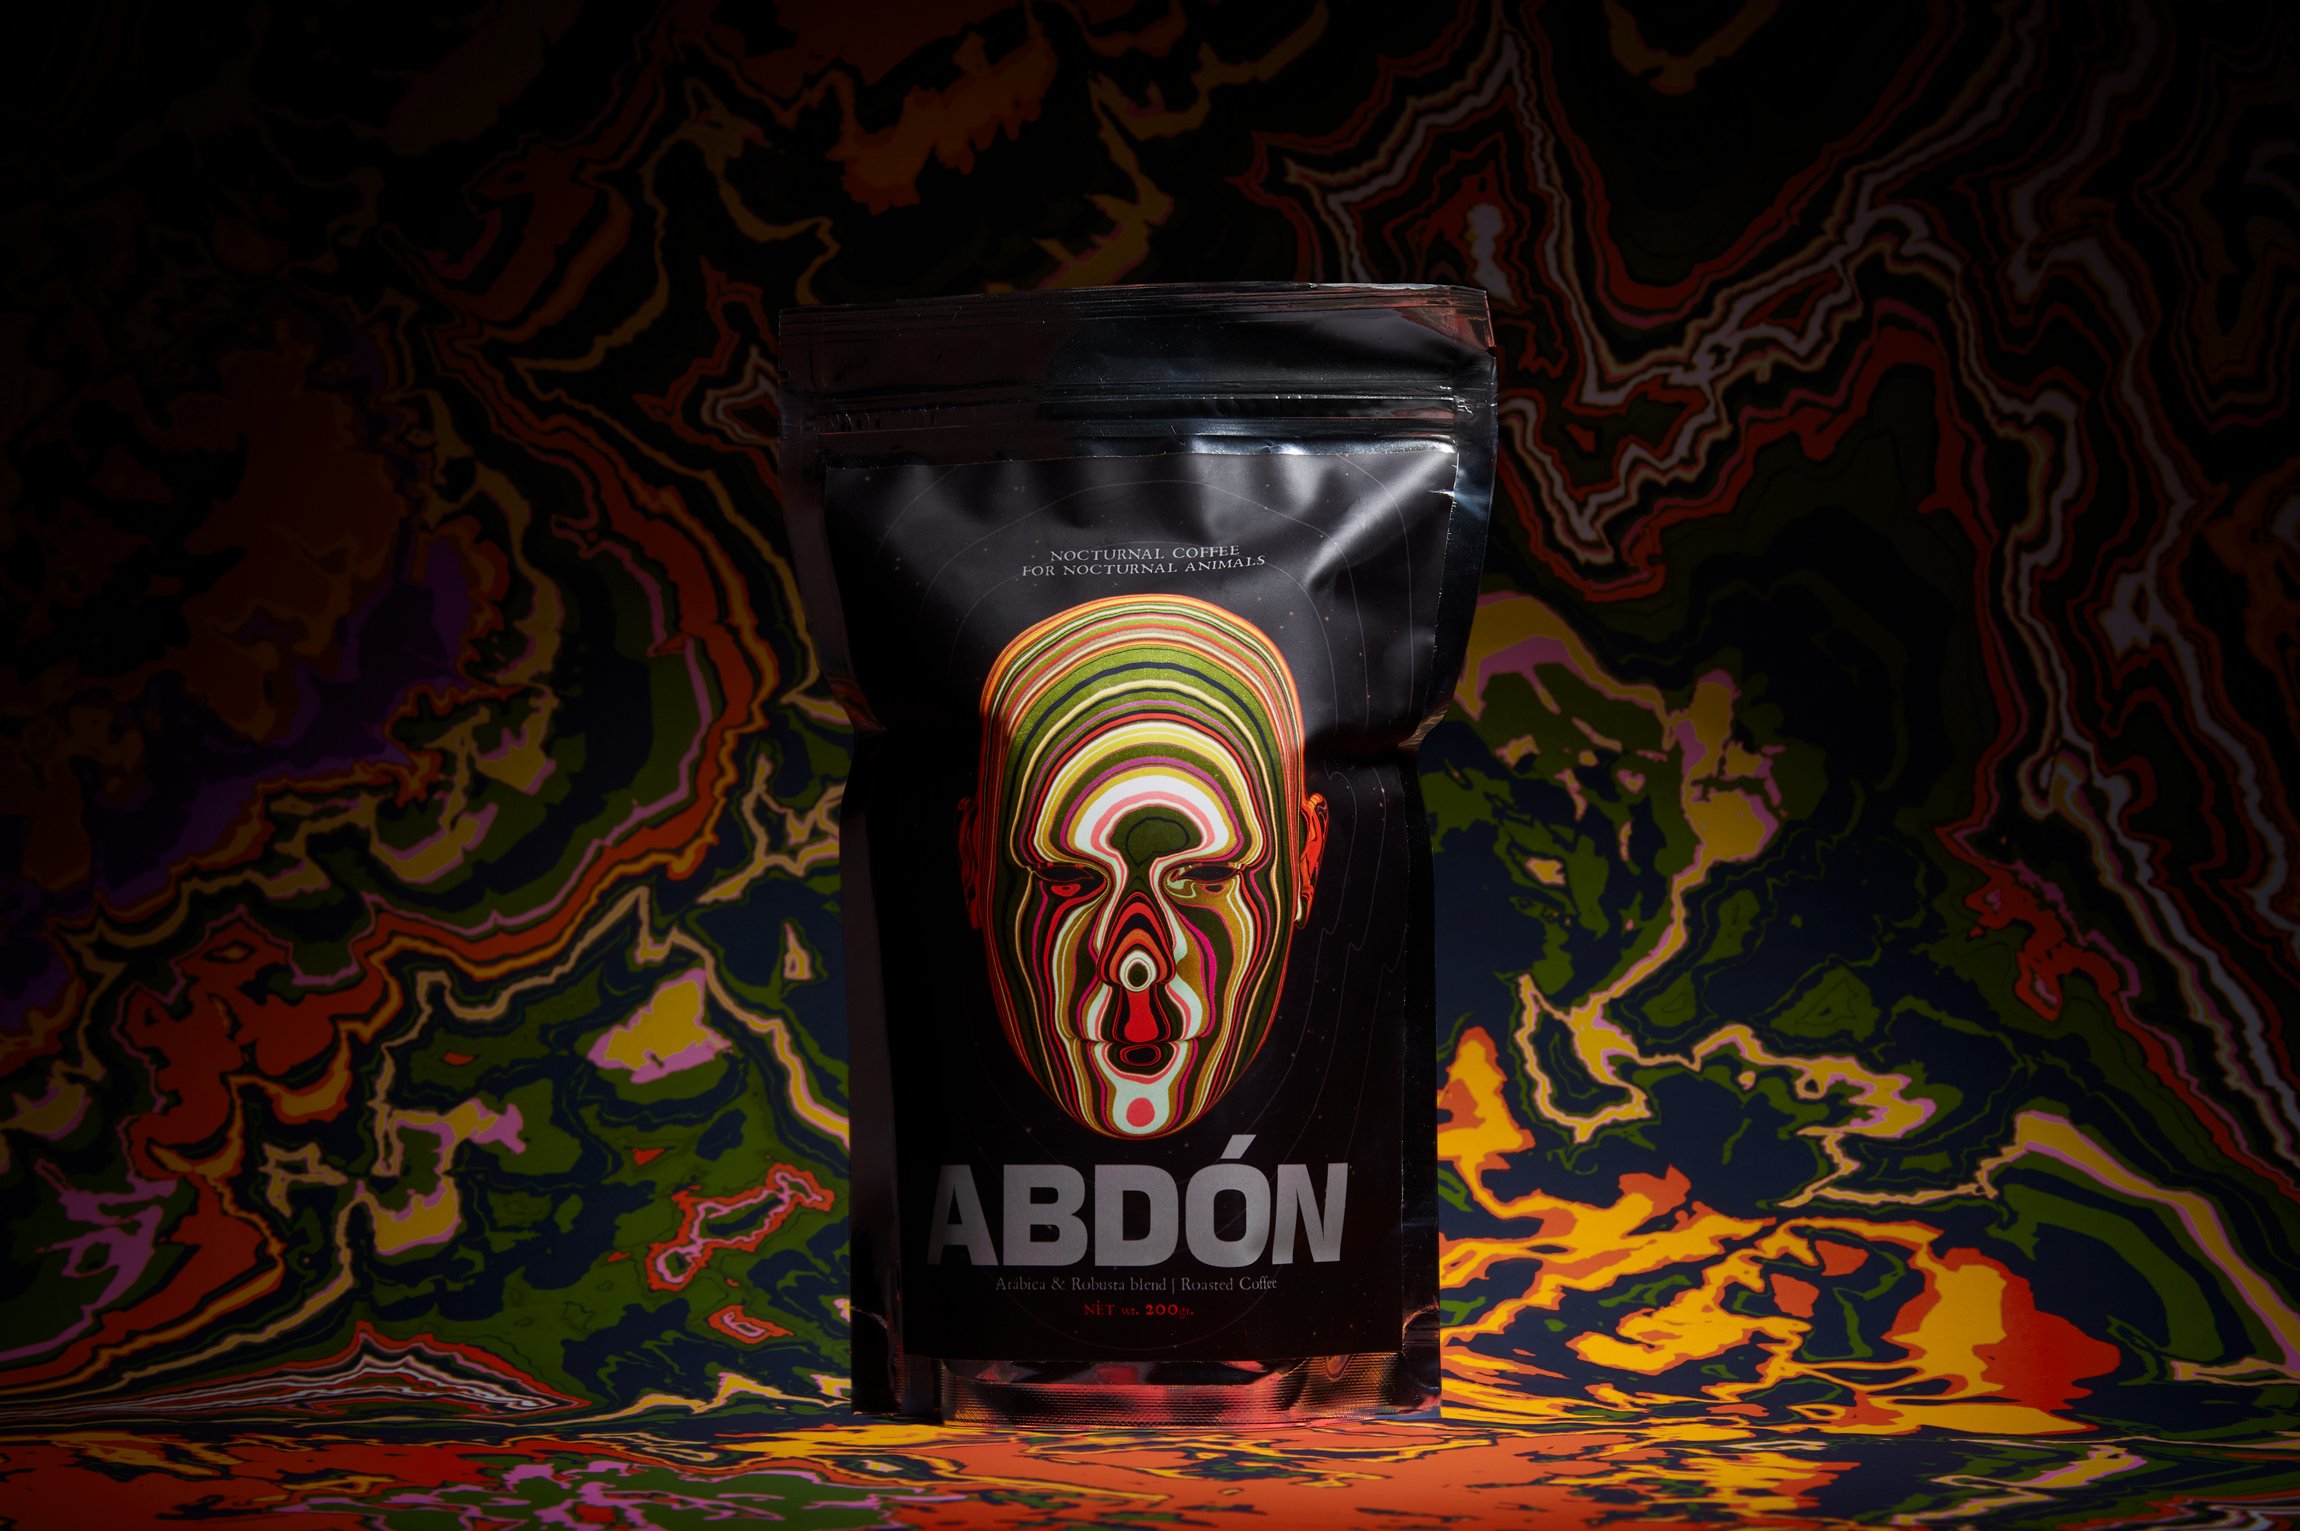 Abdón Coffee